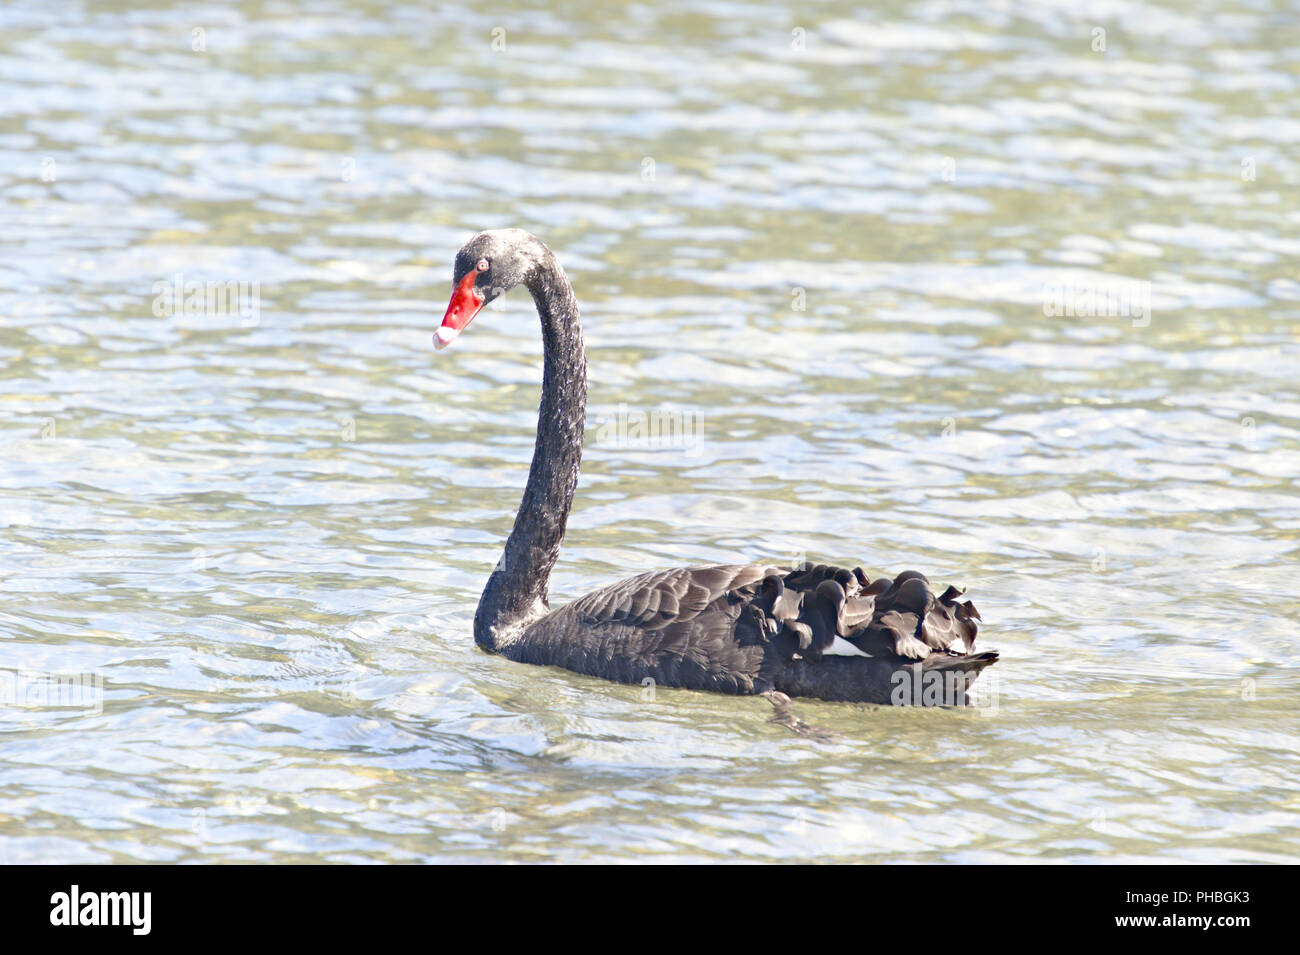 Black Swan, New Zealand Stock Photo - Alamy